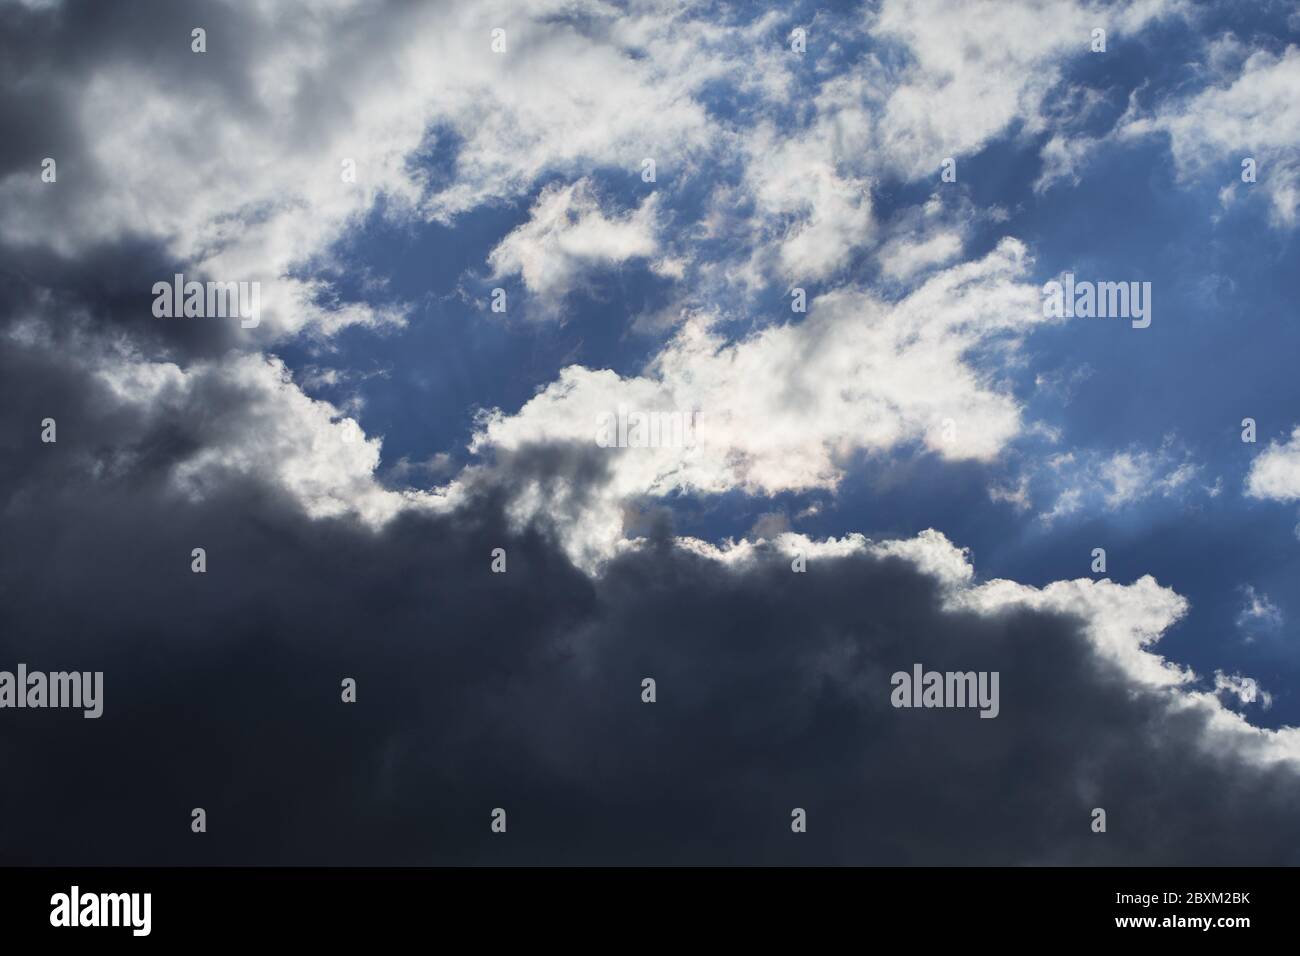 El tiempo de fondo con cielo nublado y nubes cúmulos oscuras debajo durante un día soleado Foto de stock